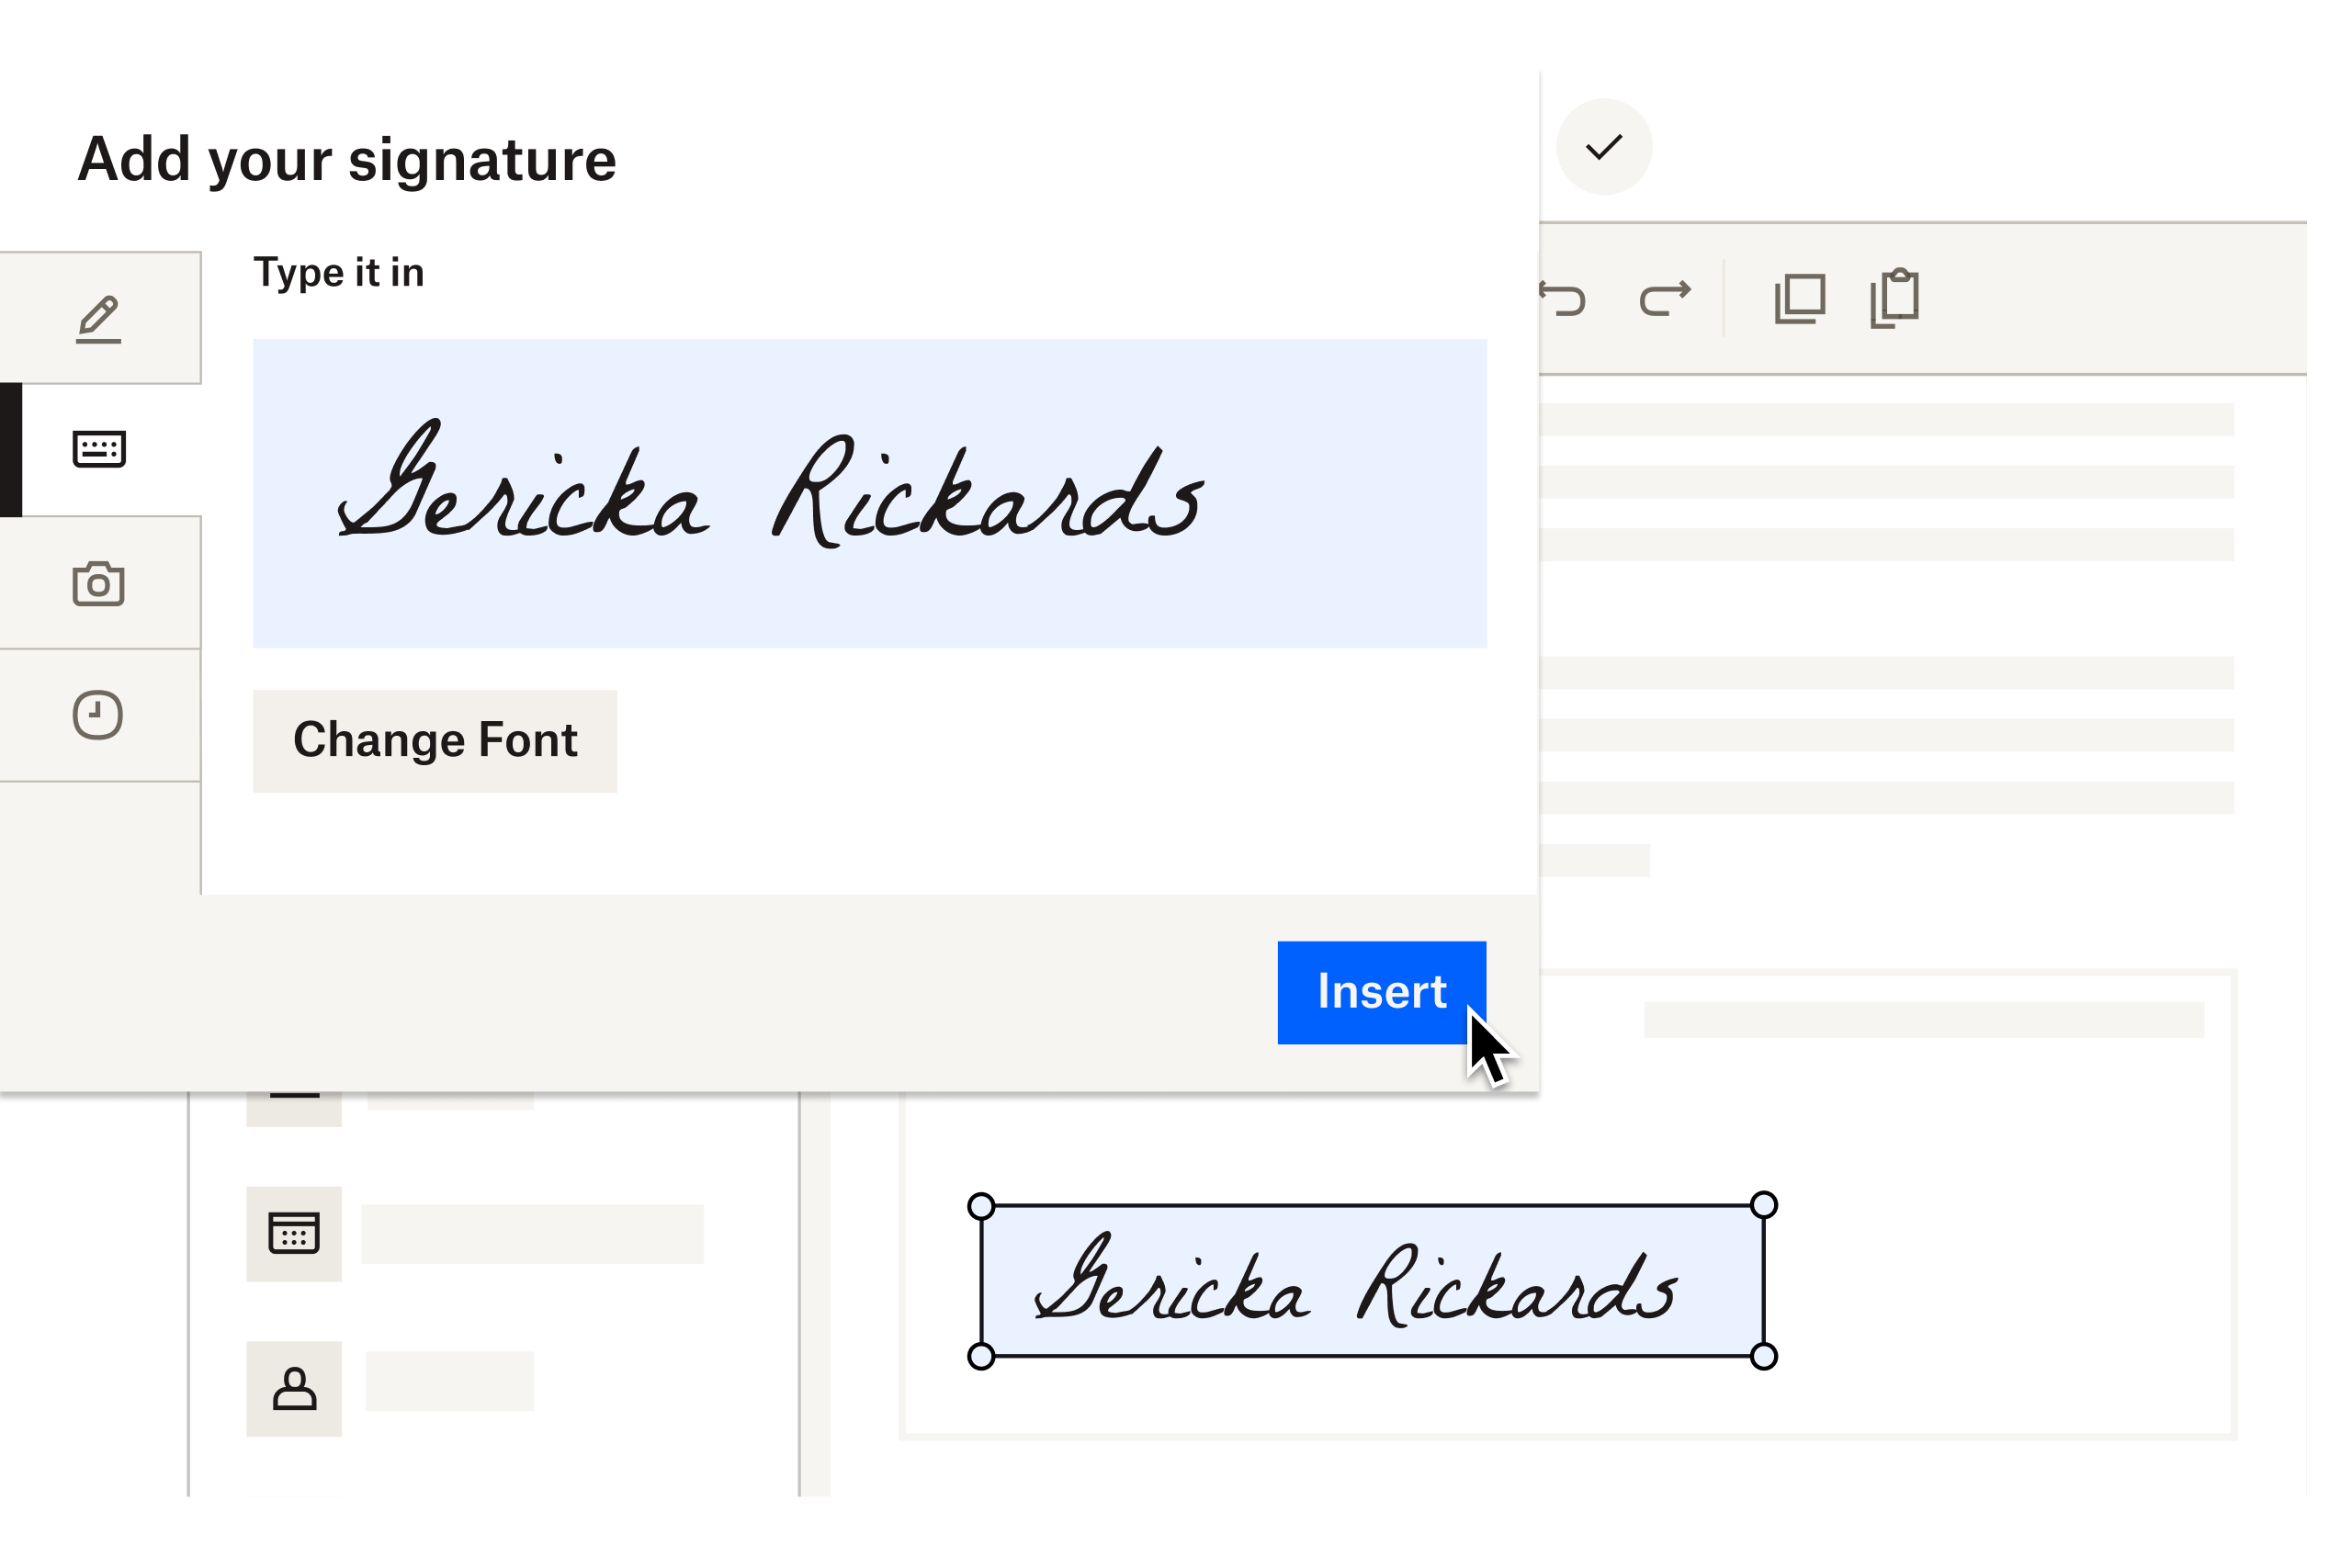 Et skærmbillede af en bruger, der indsætter en e-signatur i et dokument.